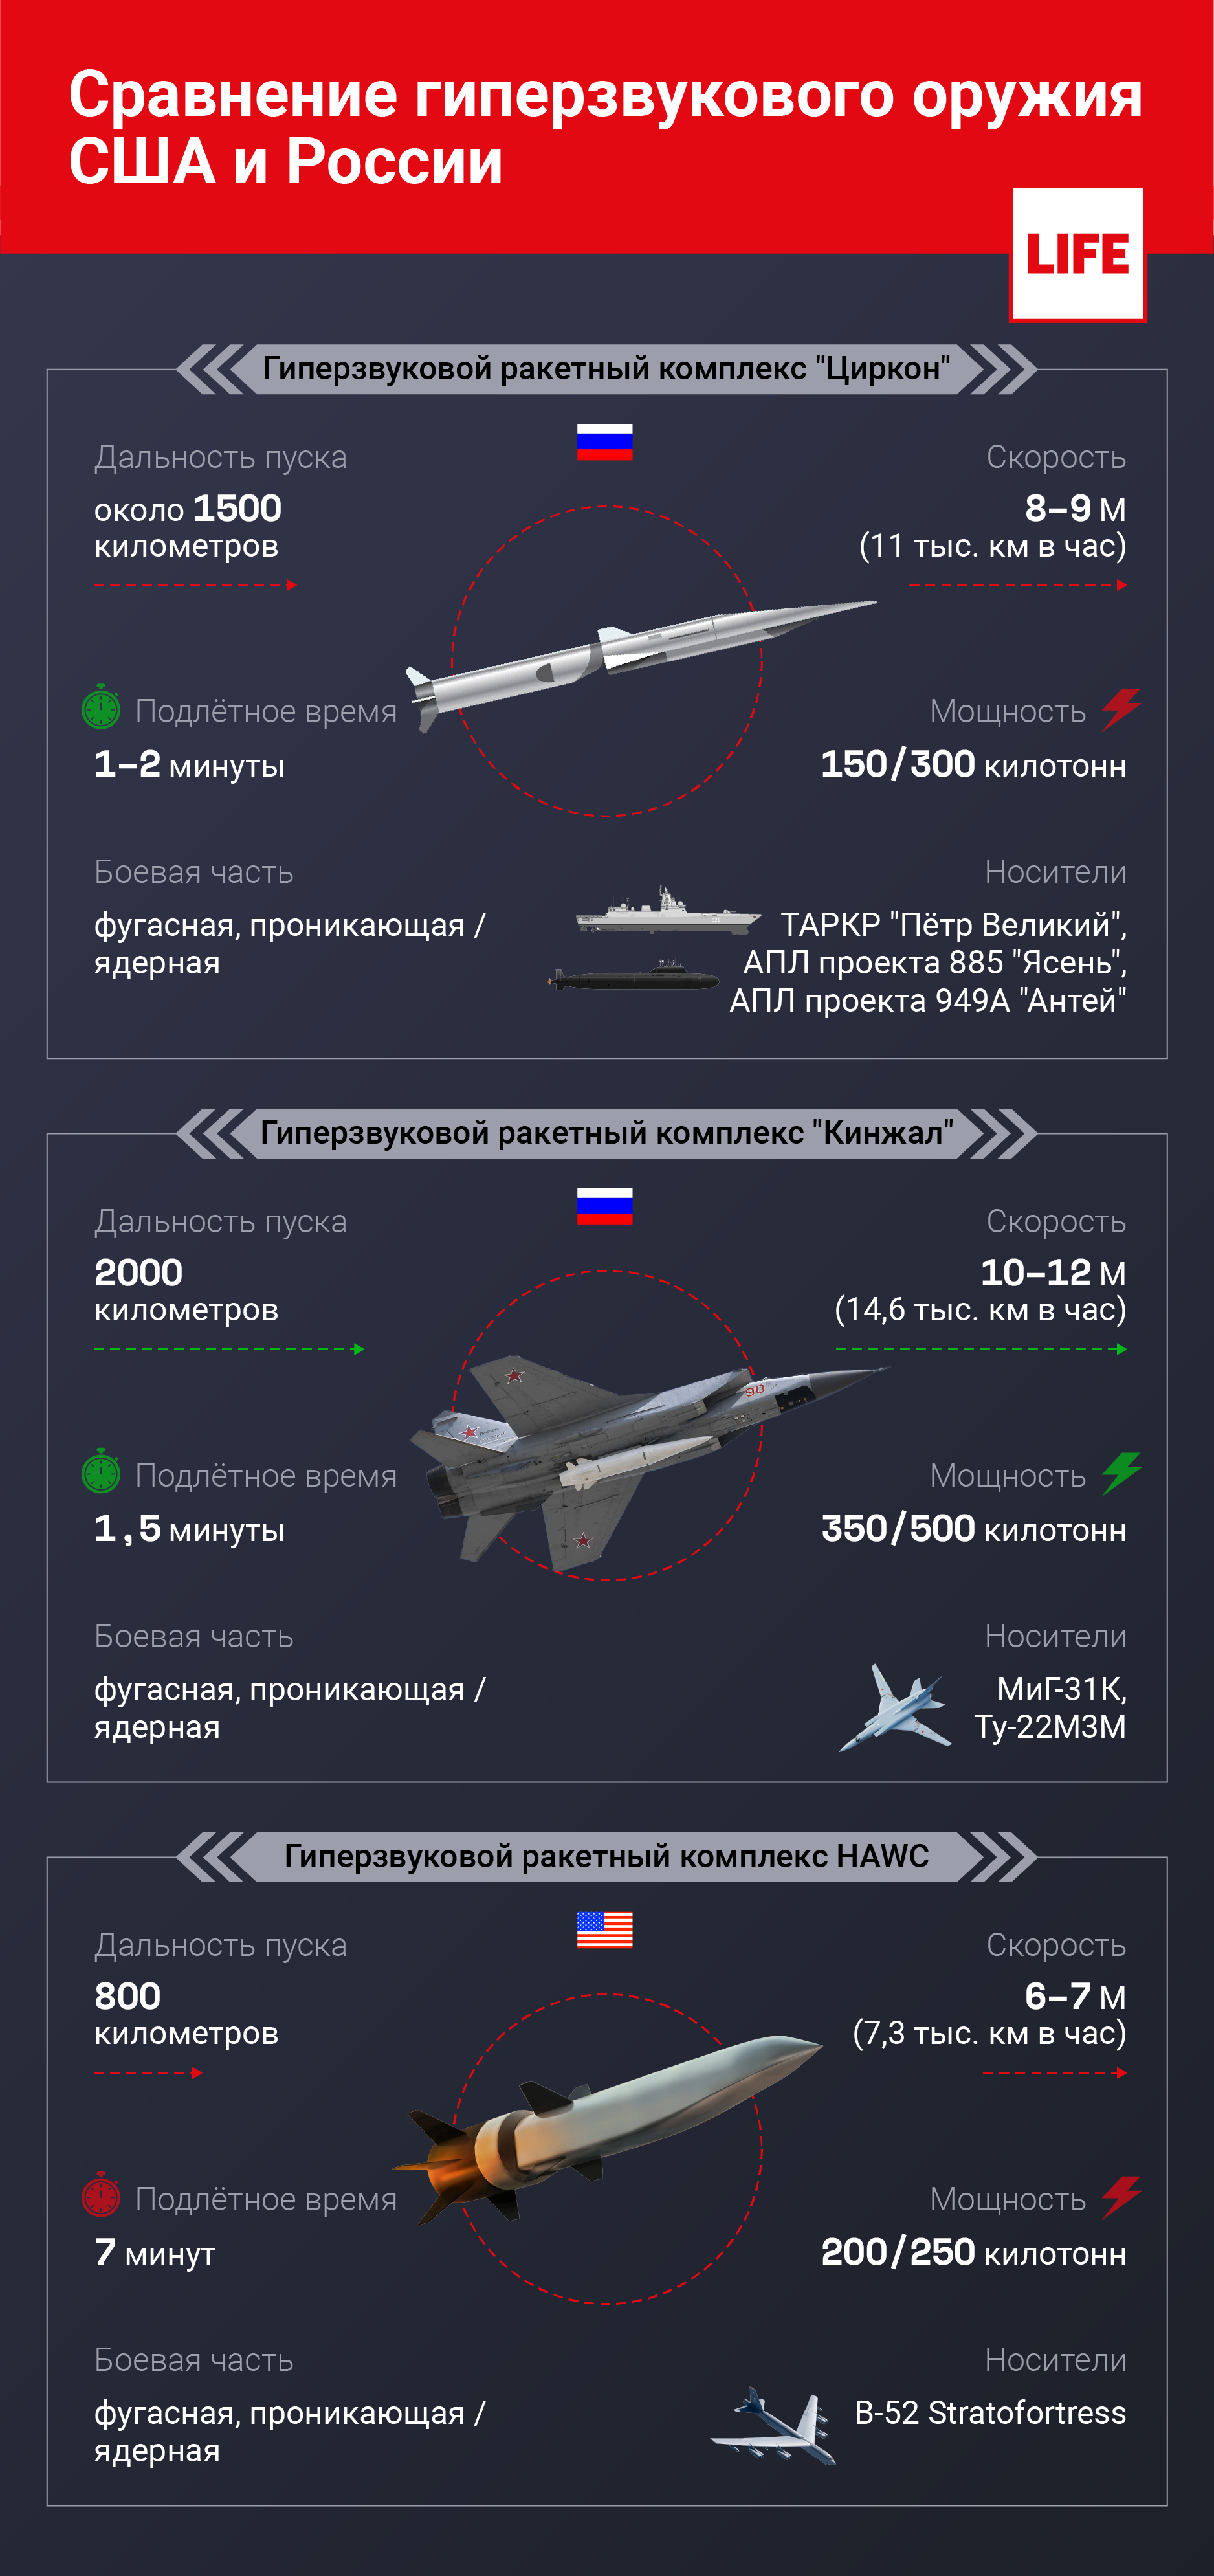 Сравнение гиперзвукового оружия США и России. Инфографика © LIFE